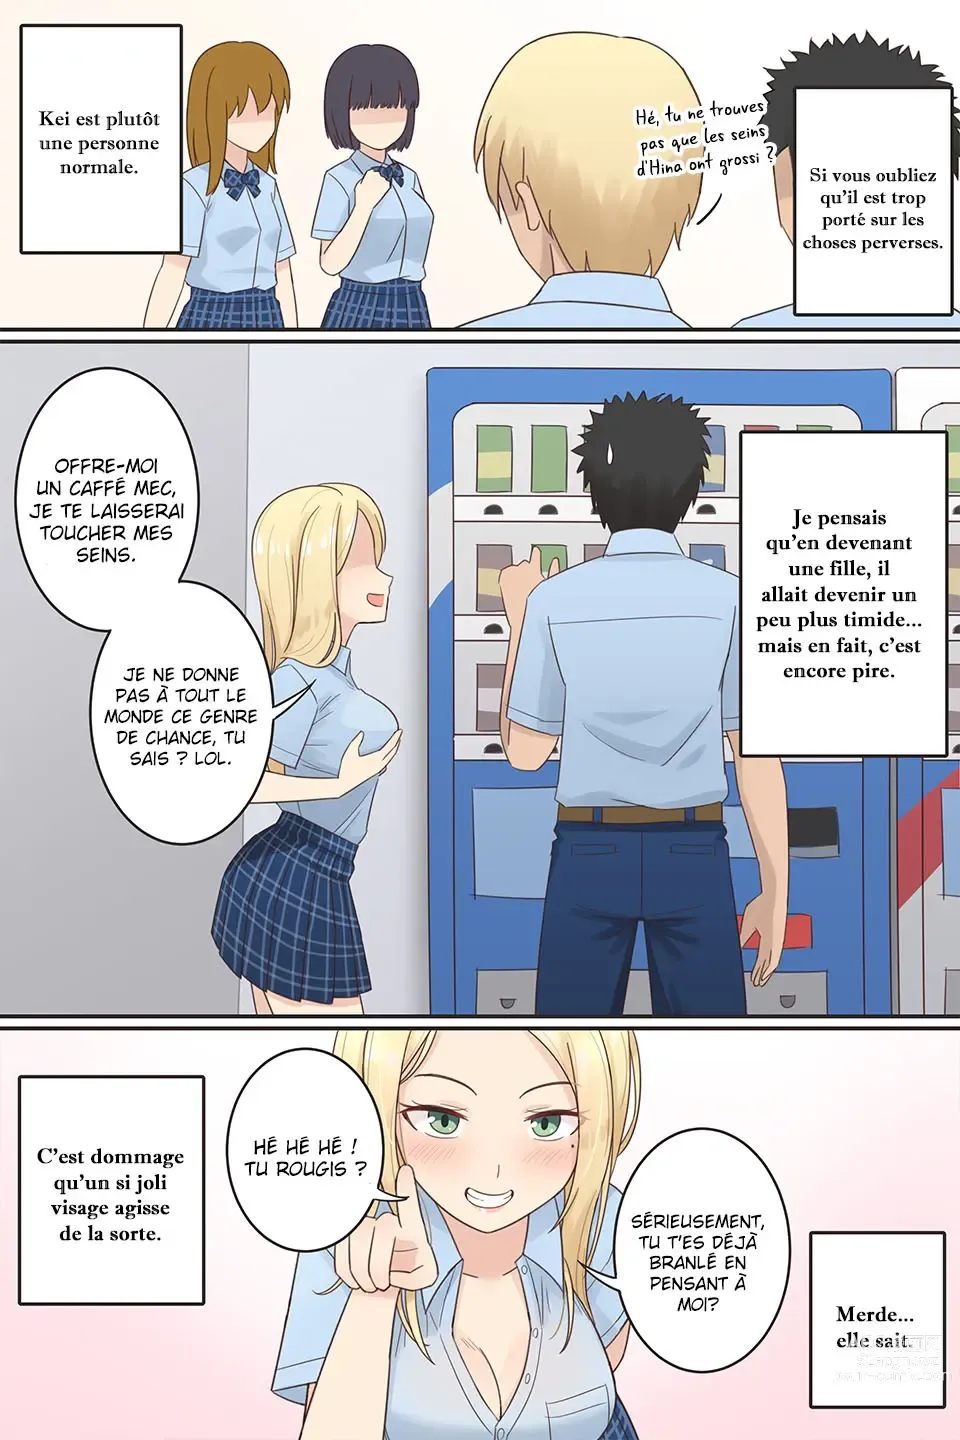 Page 2 of doujinshi Quand mon ami pervers est devenue une fille.